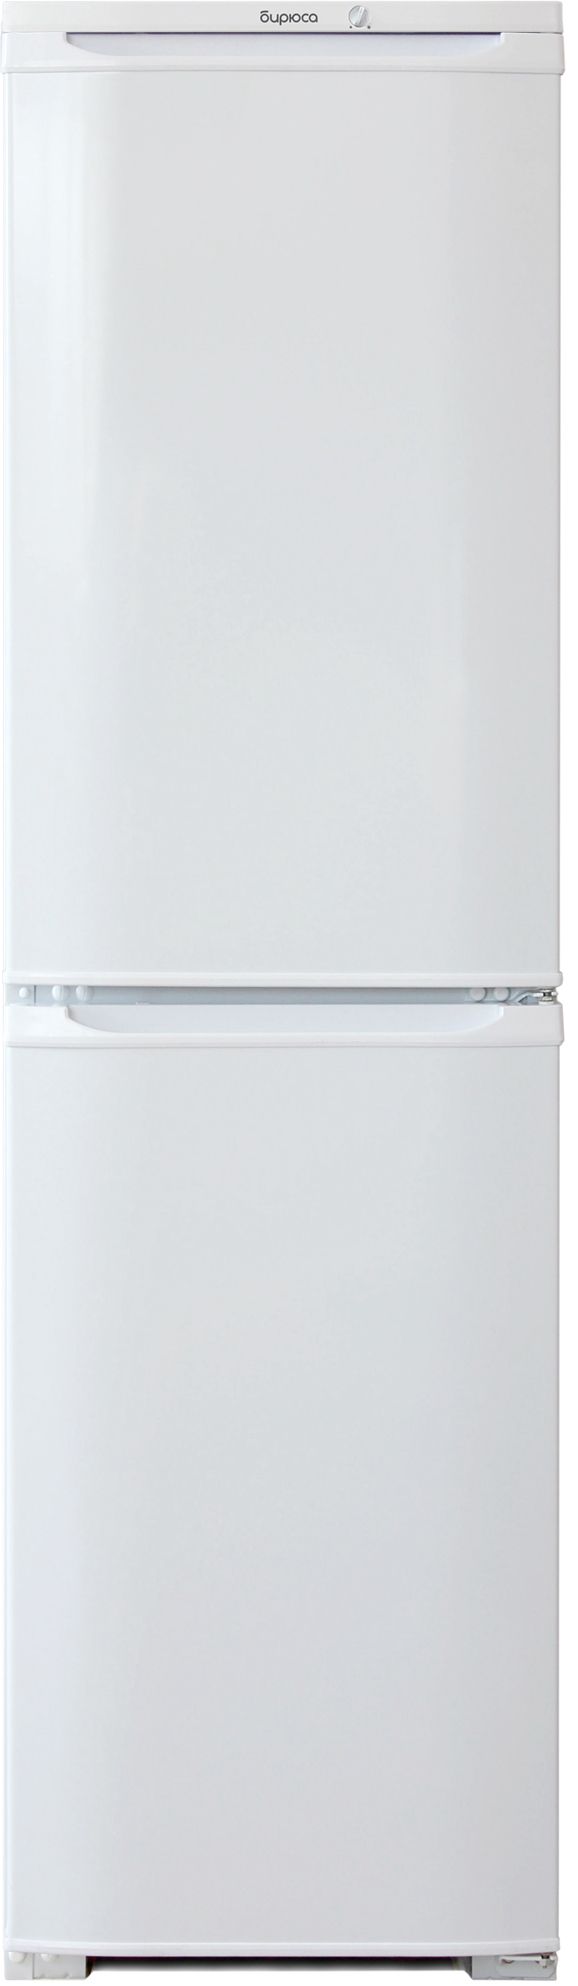 холодильник бирюса 120, купить в Красноярске холодильник бирюса 120,  купить в Красноярске дешево холодильник бирюса 120, купить в Красноярске минимальной цене холодильник бирюса 120